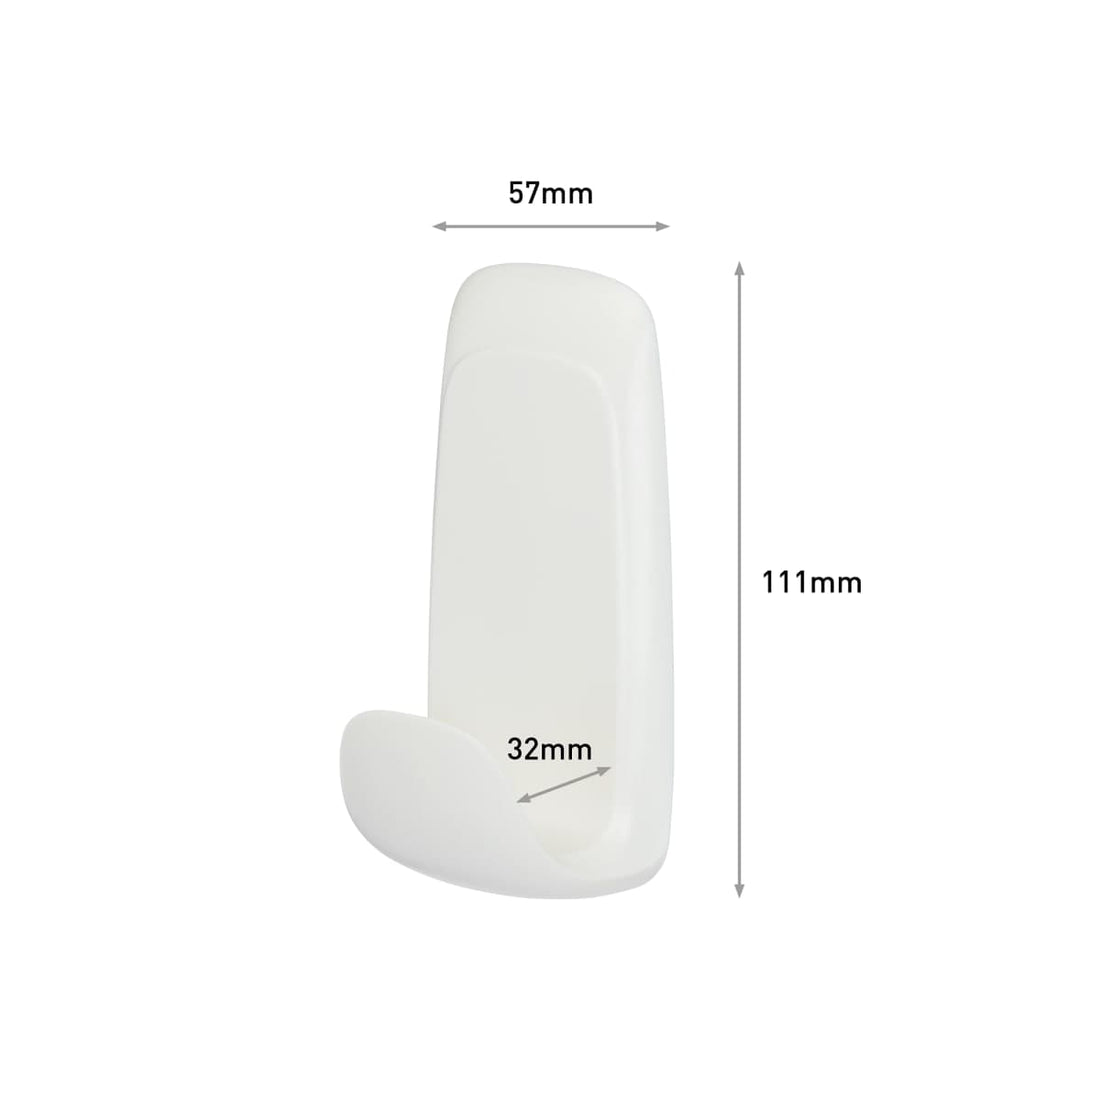 WHITE ADHESIVE HOOK FOR BATHROOM COMMAND GRANDE 3,4 KG - best price from Maltashopper.com BR410007408